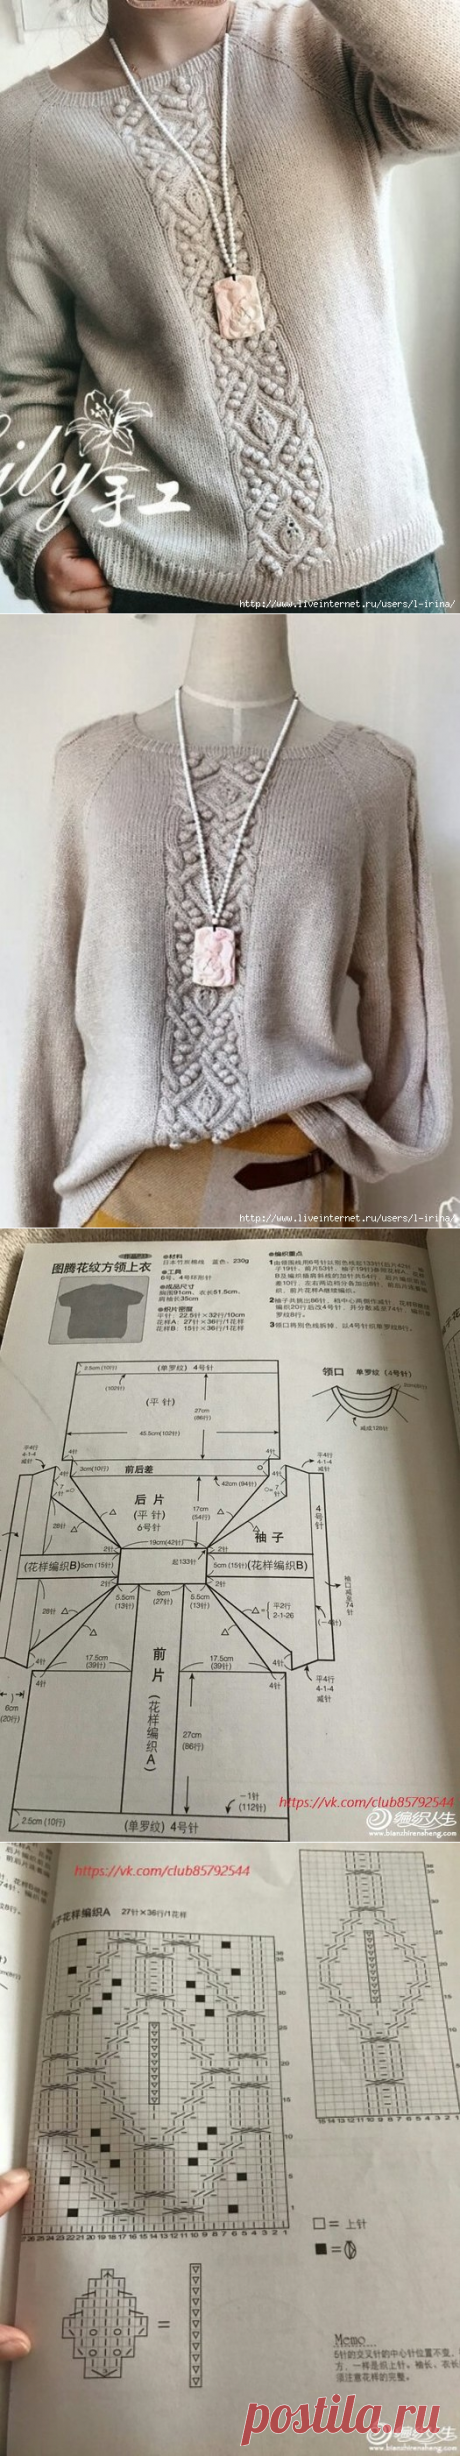 Пуловер с центральным узором